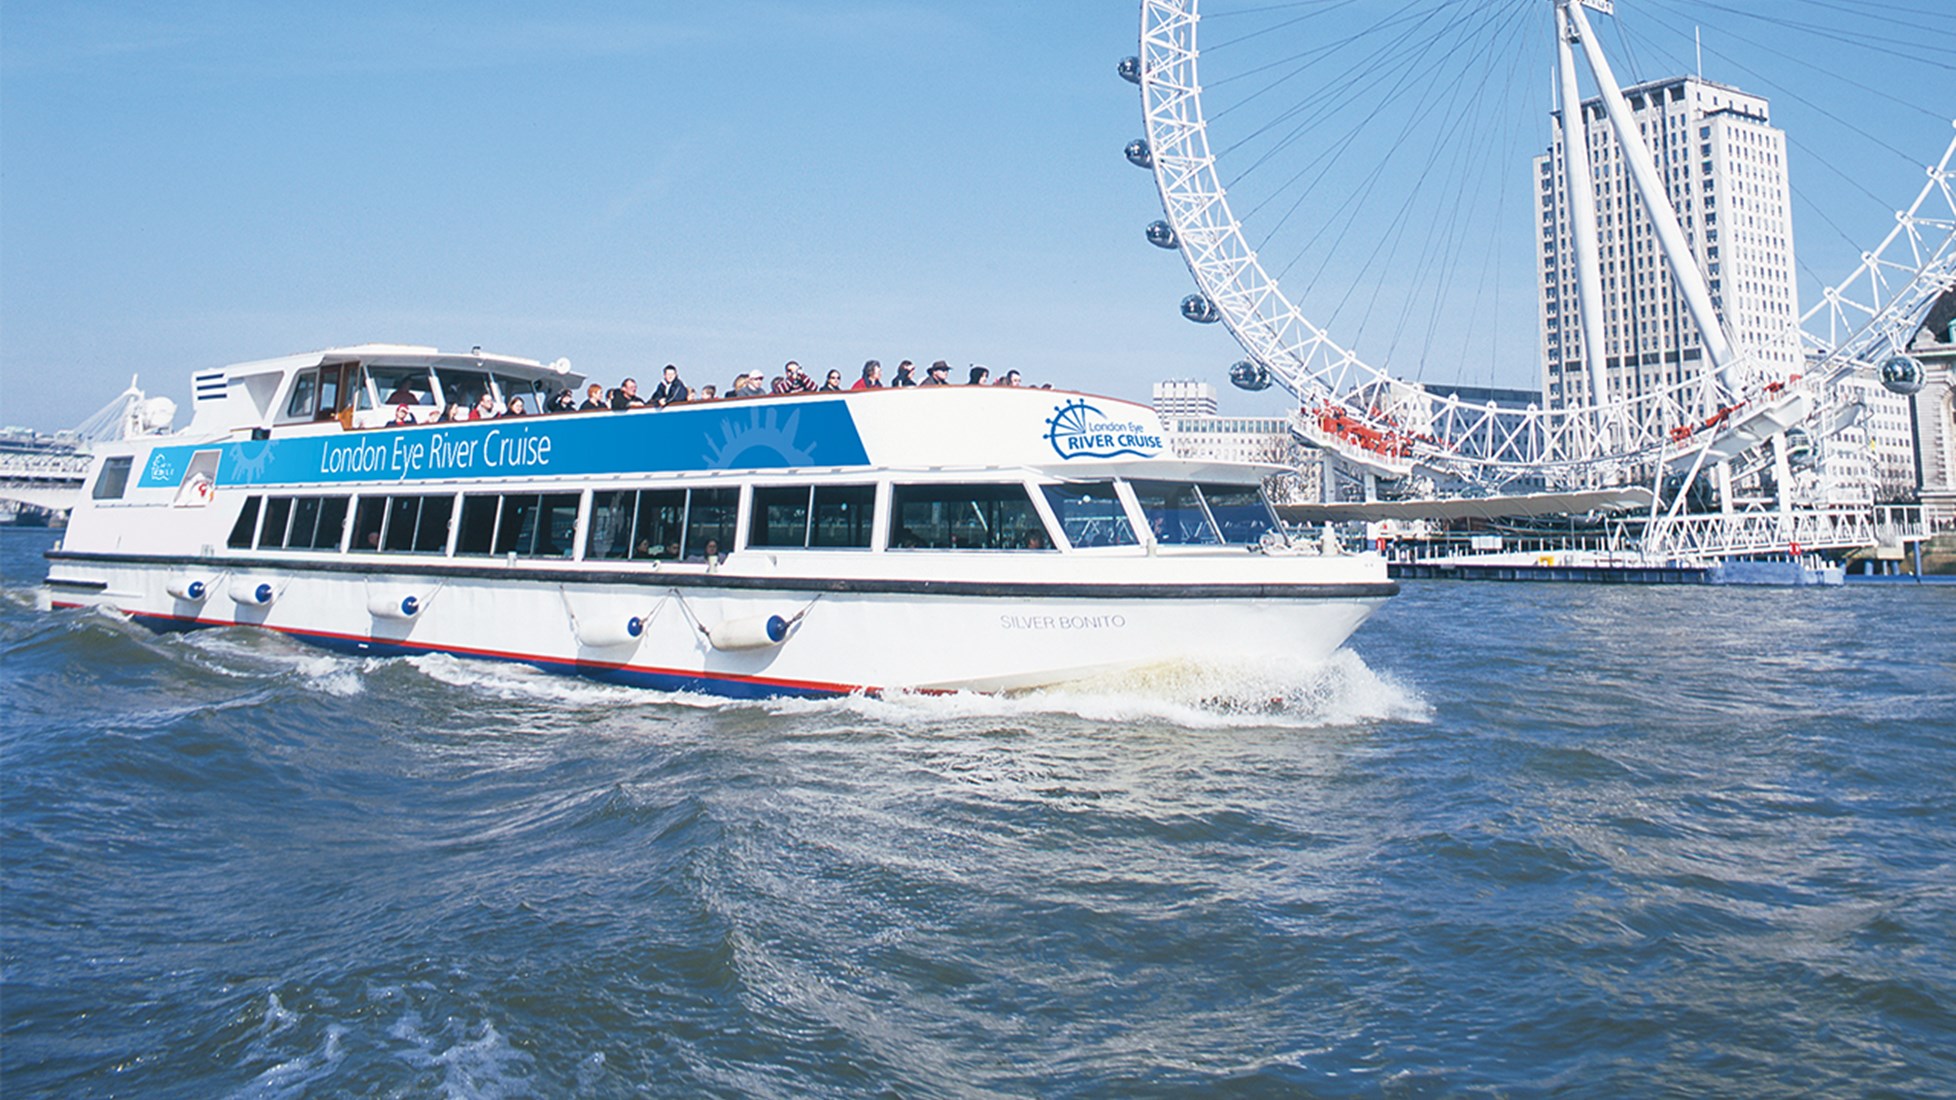 london eye river cruise times